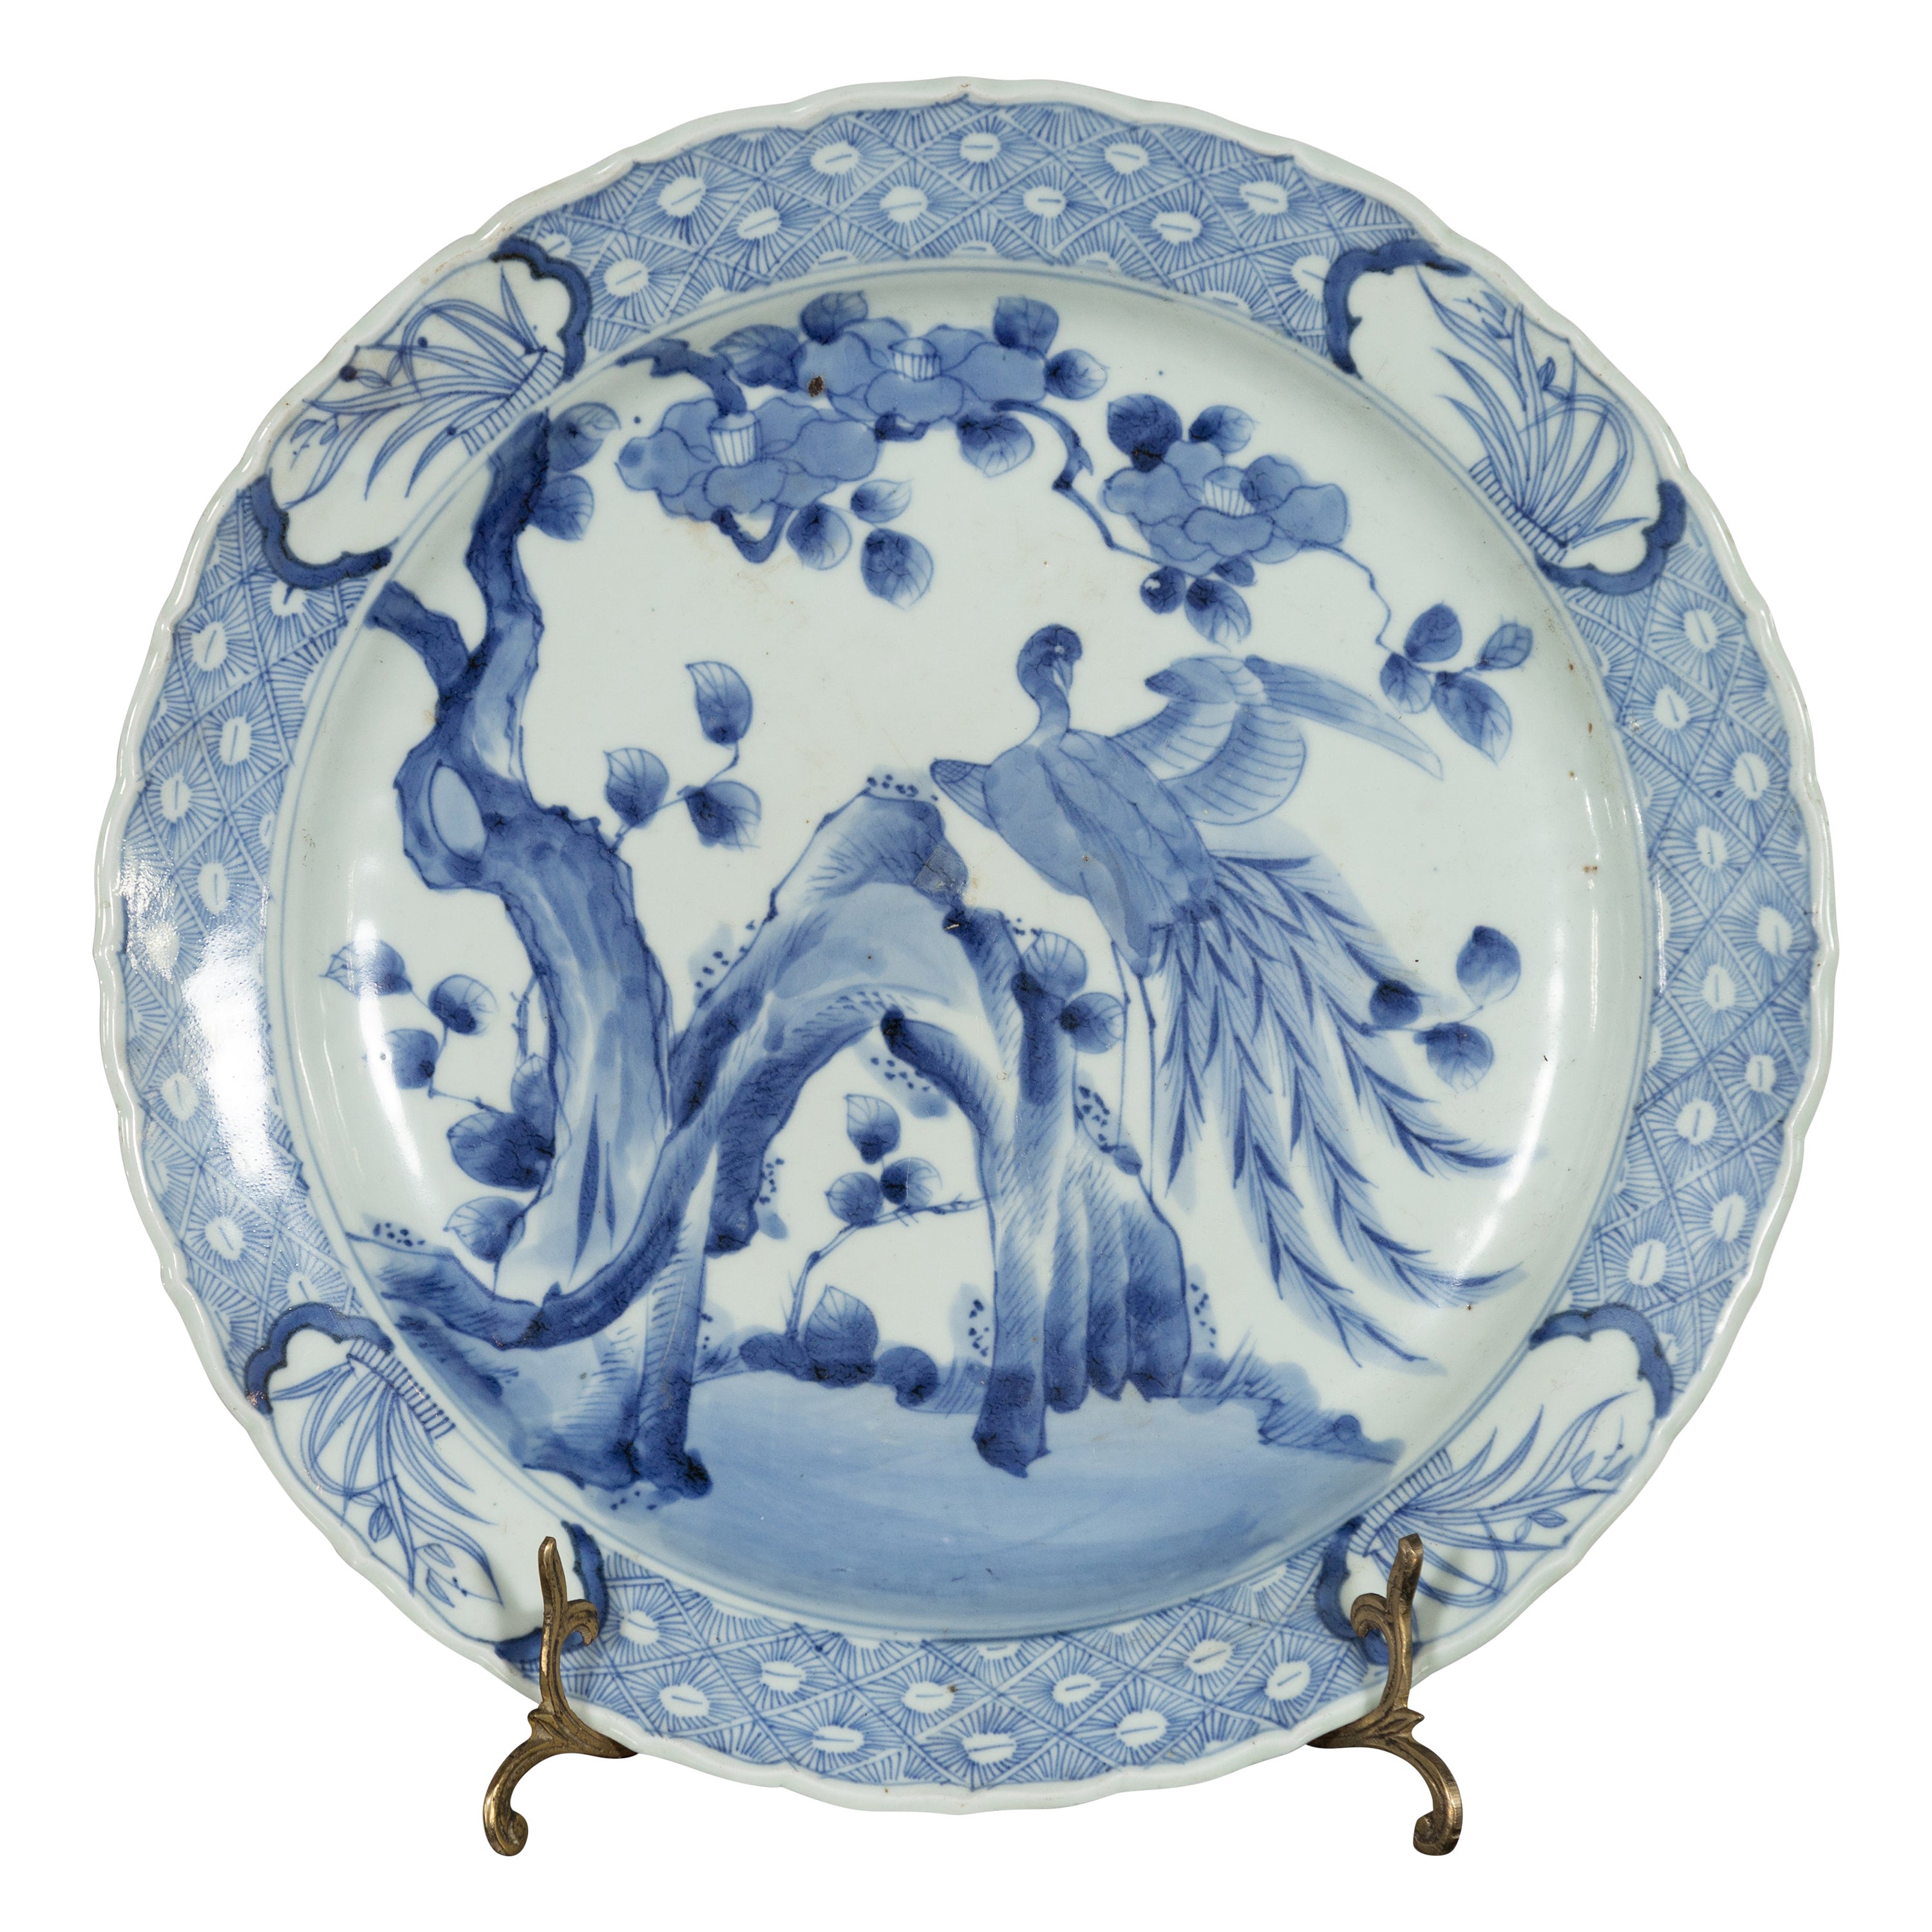 Japanischer Porzellanteller des 19. Jahrhunderts mit blau-weißem Vogel-Dekor